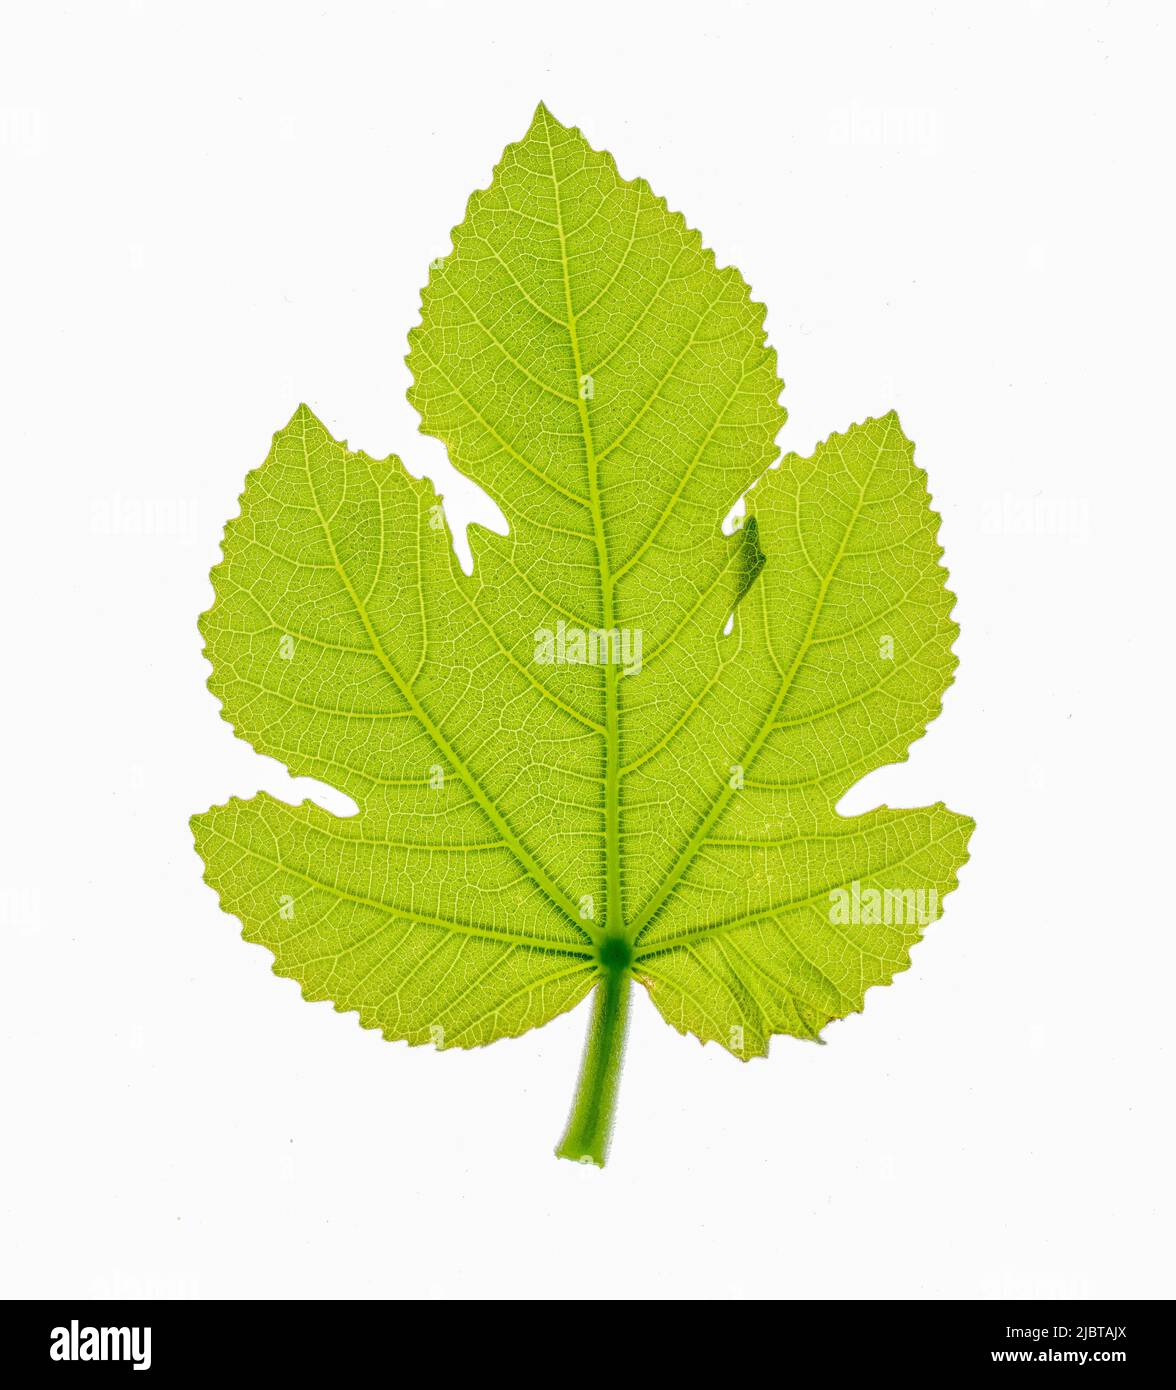 Gros plan d'une feuille de figuier verte avec un joli motif de nervures Banque D'Images